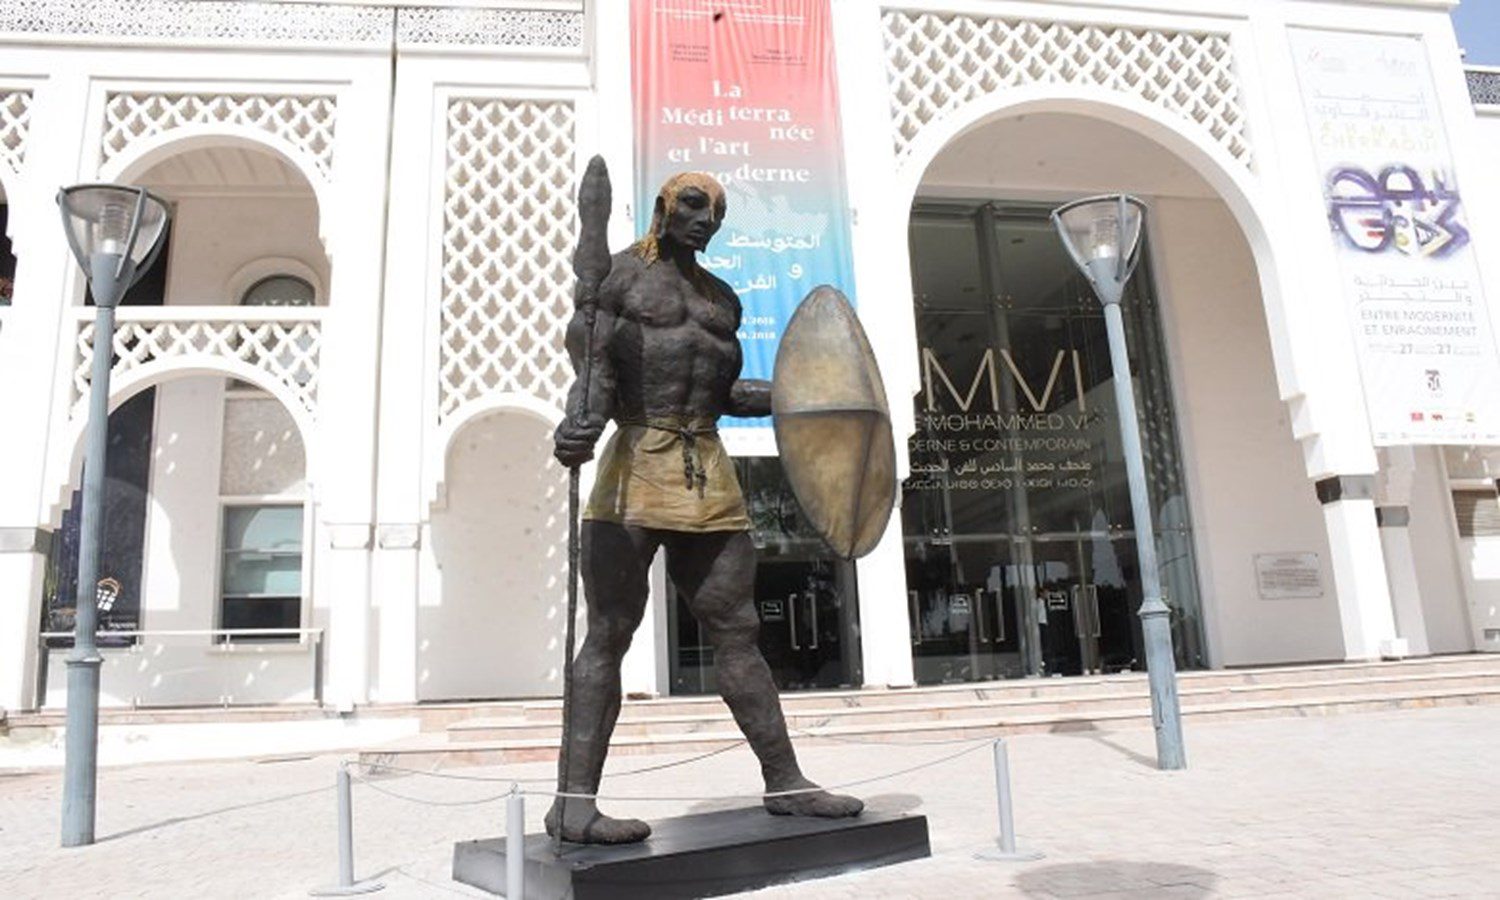 العاصمة الرباط تحتضن أبواب مفتوحة لمعرض “دولاكروا، ذكريات رحلة إلى المغرب”